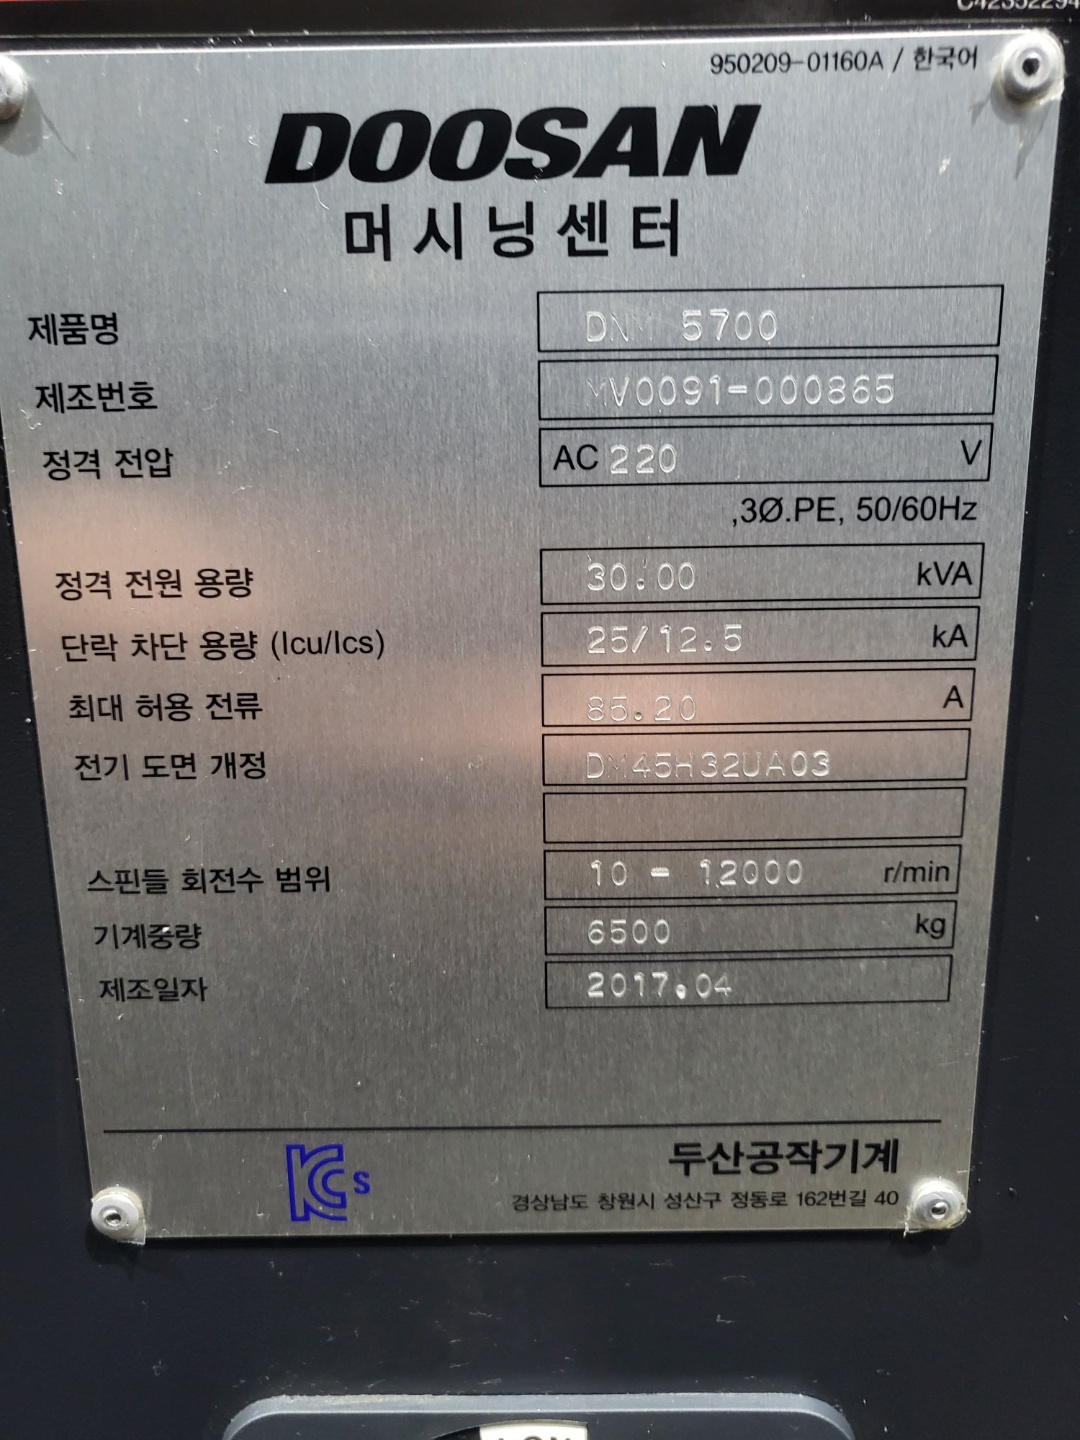 두산5호 머시닝센타 DNM-5700(2017년식)